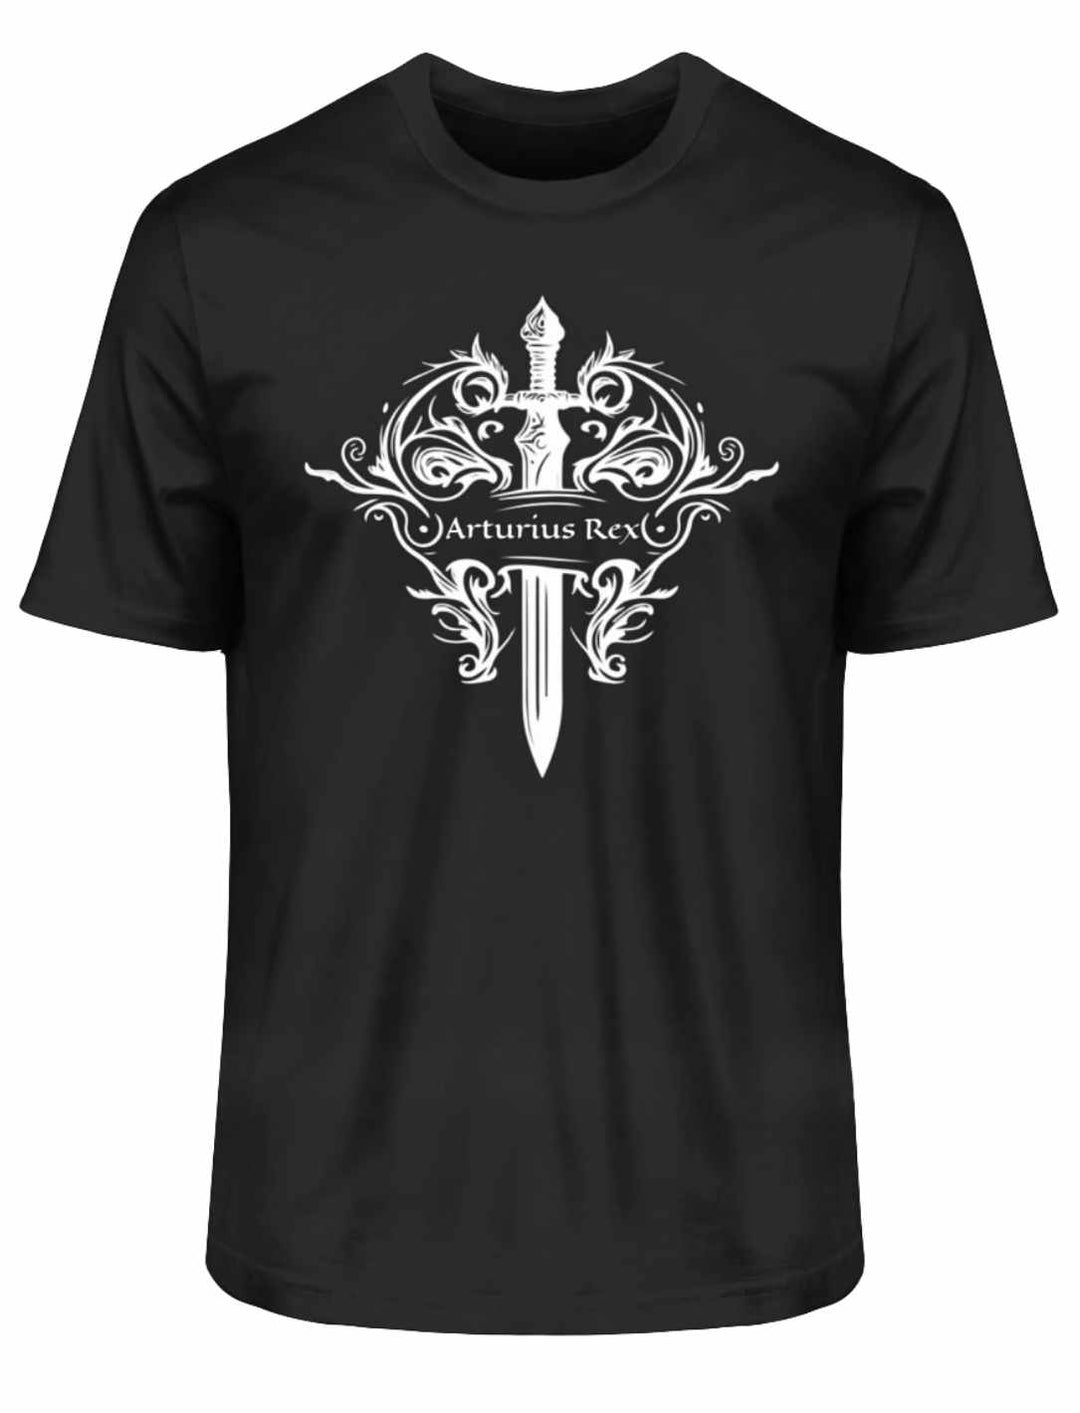 Mystisches "Arturius Rex"-T-Shirt in Schwarz mit Excalibur und keltischen Symbolen auf weißem Hintergrund.